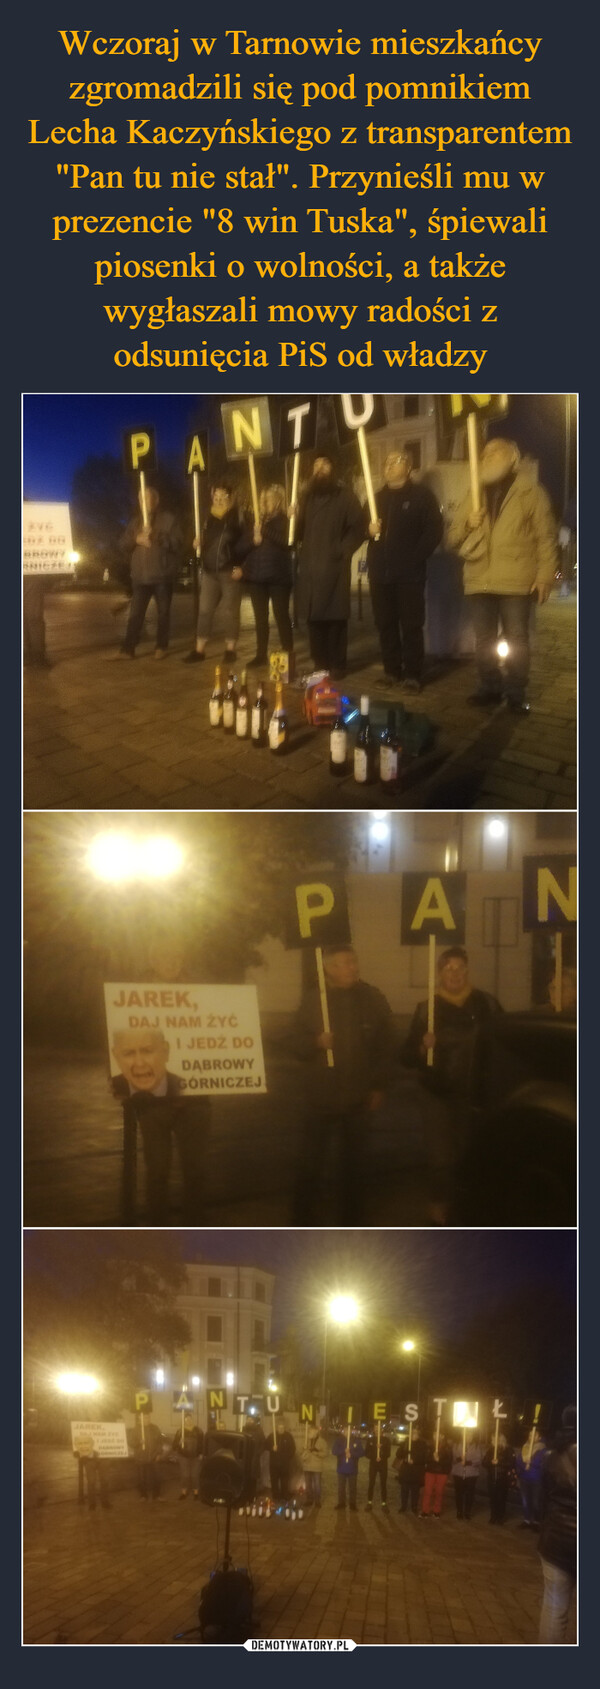 Wczoraj w Tarnowie mieszkańcy zgromadzili się pod pomnikiem Lecha Kaczyńskiego z transparentem "Pan tu nie stał". Przynieśli mu w prezencie "8 win Tuska", śpiewali piosenki o wolności, a także wygłaszali mowy radości z odsunięcia PiS od władzy